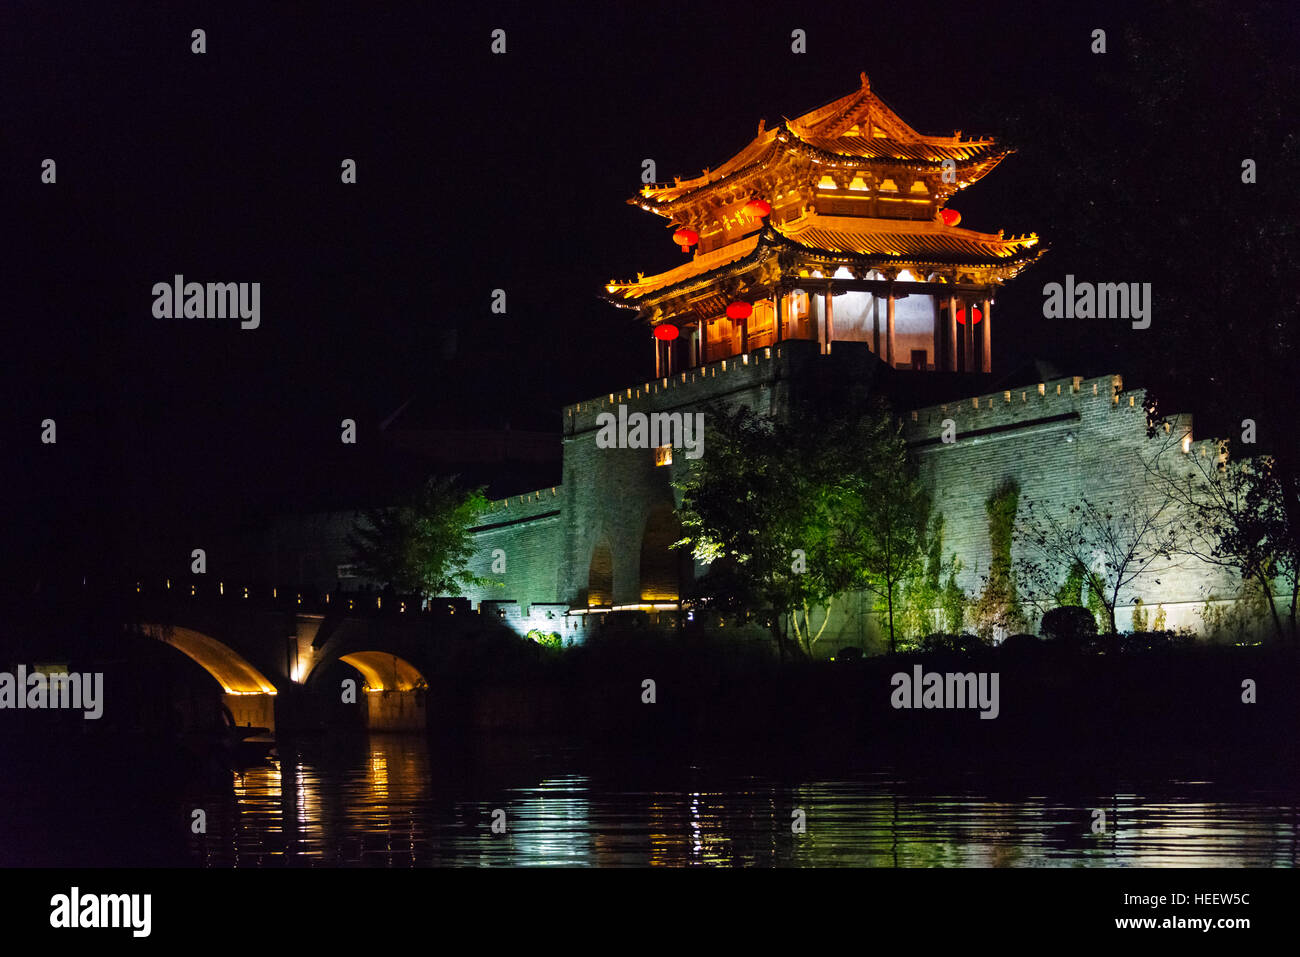 Nachtansicht des beleuchteten Turm am Wassertor Anlan auf dem Canal Grande, die antike Stadt Taierzhuang, Provinz Shandong, China Stockfoto